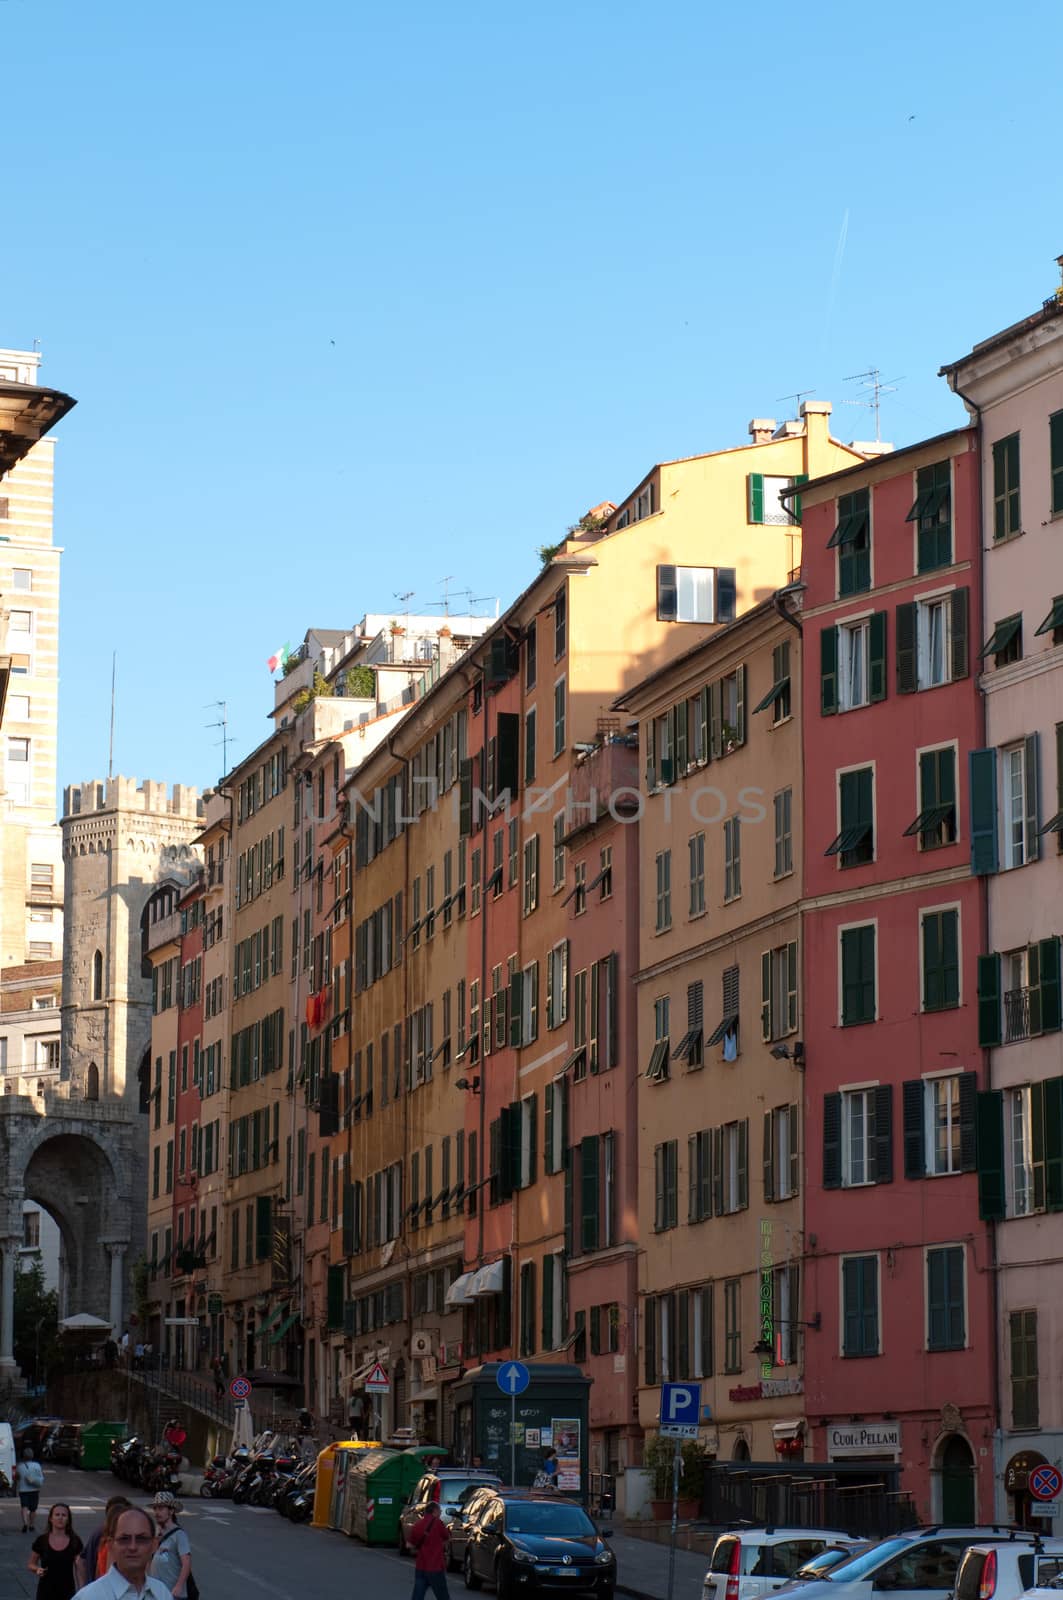 Street of Genoa. Italy